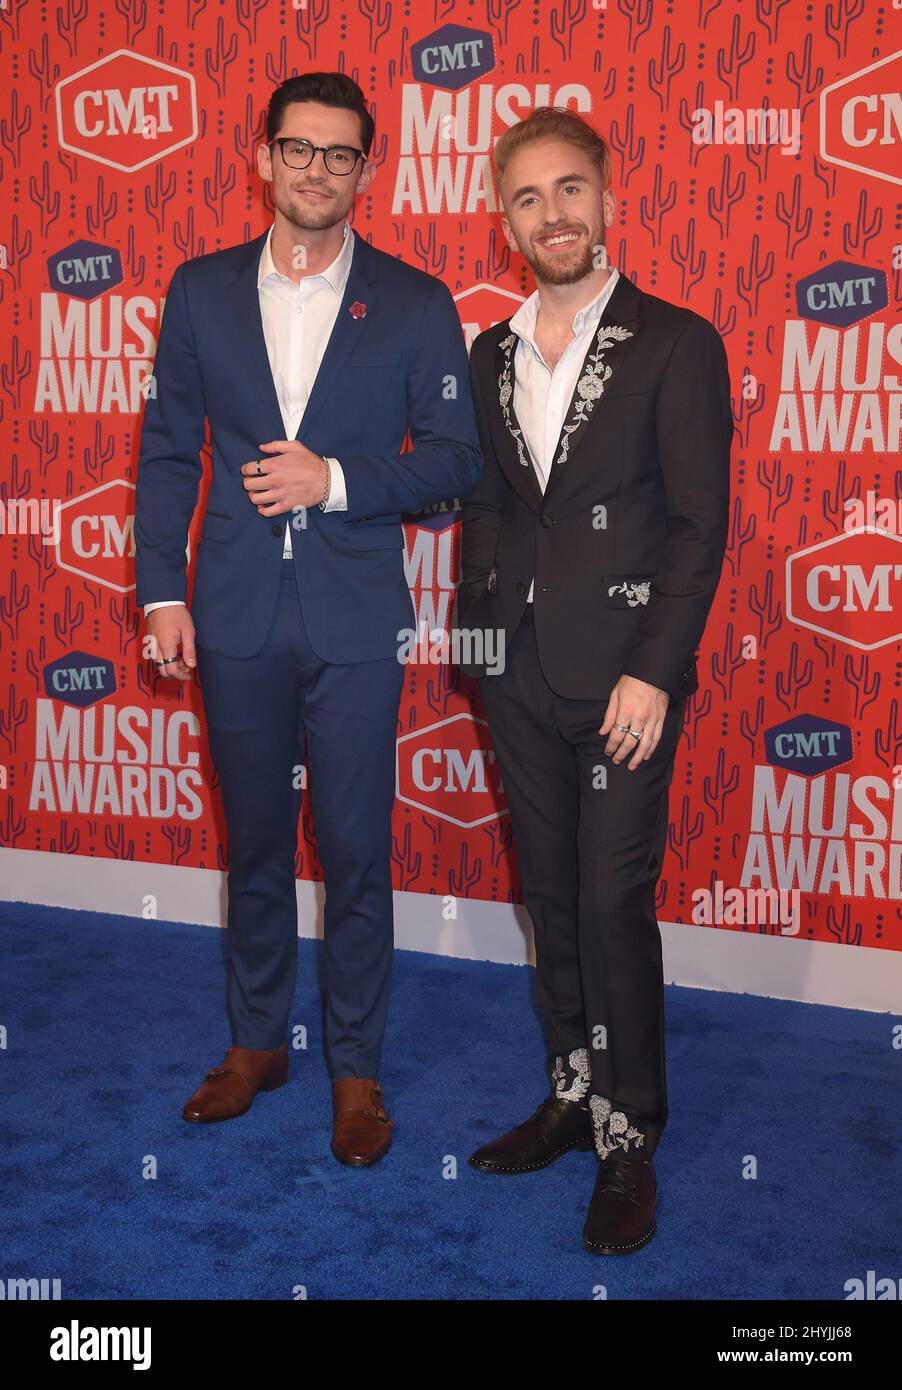 Seaforth bei den CMT Music Awards 2019, die am 5. Juni 2019 in der Bridgestone Arena in Nashville, TN, abgehalten wurden. Stockfoto